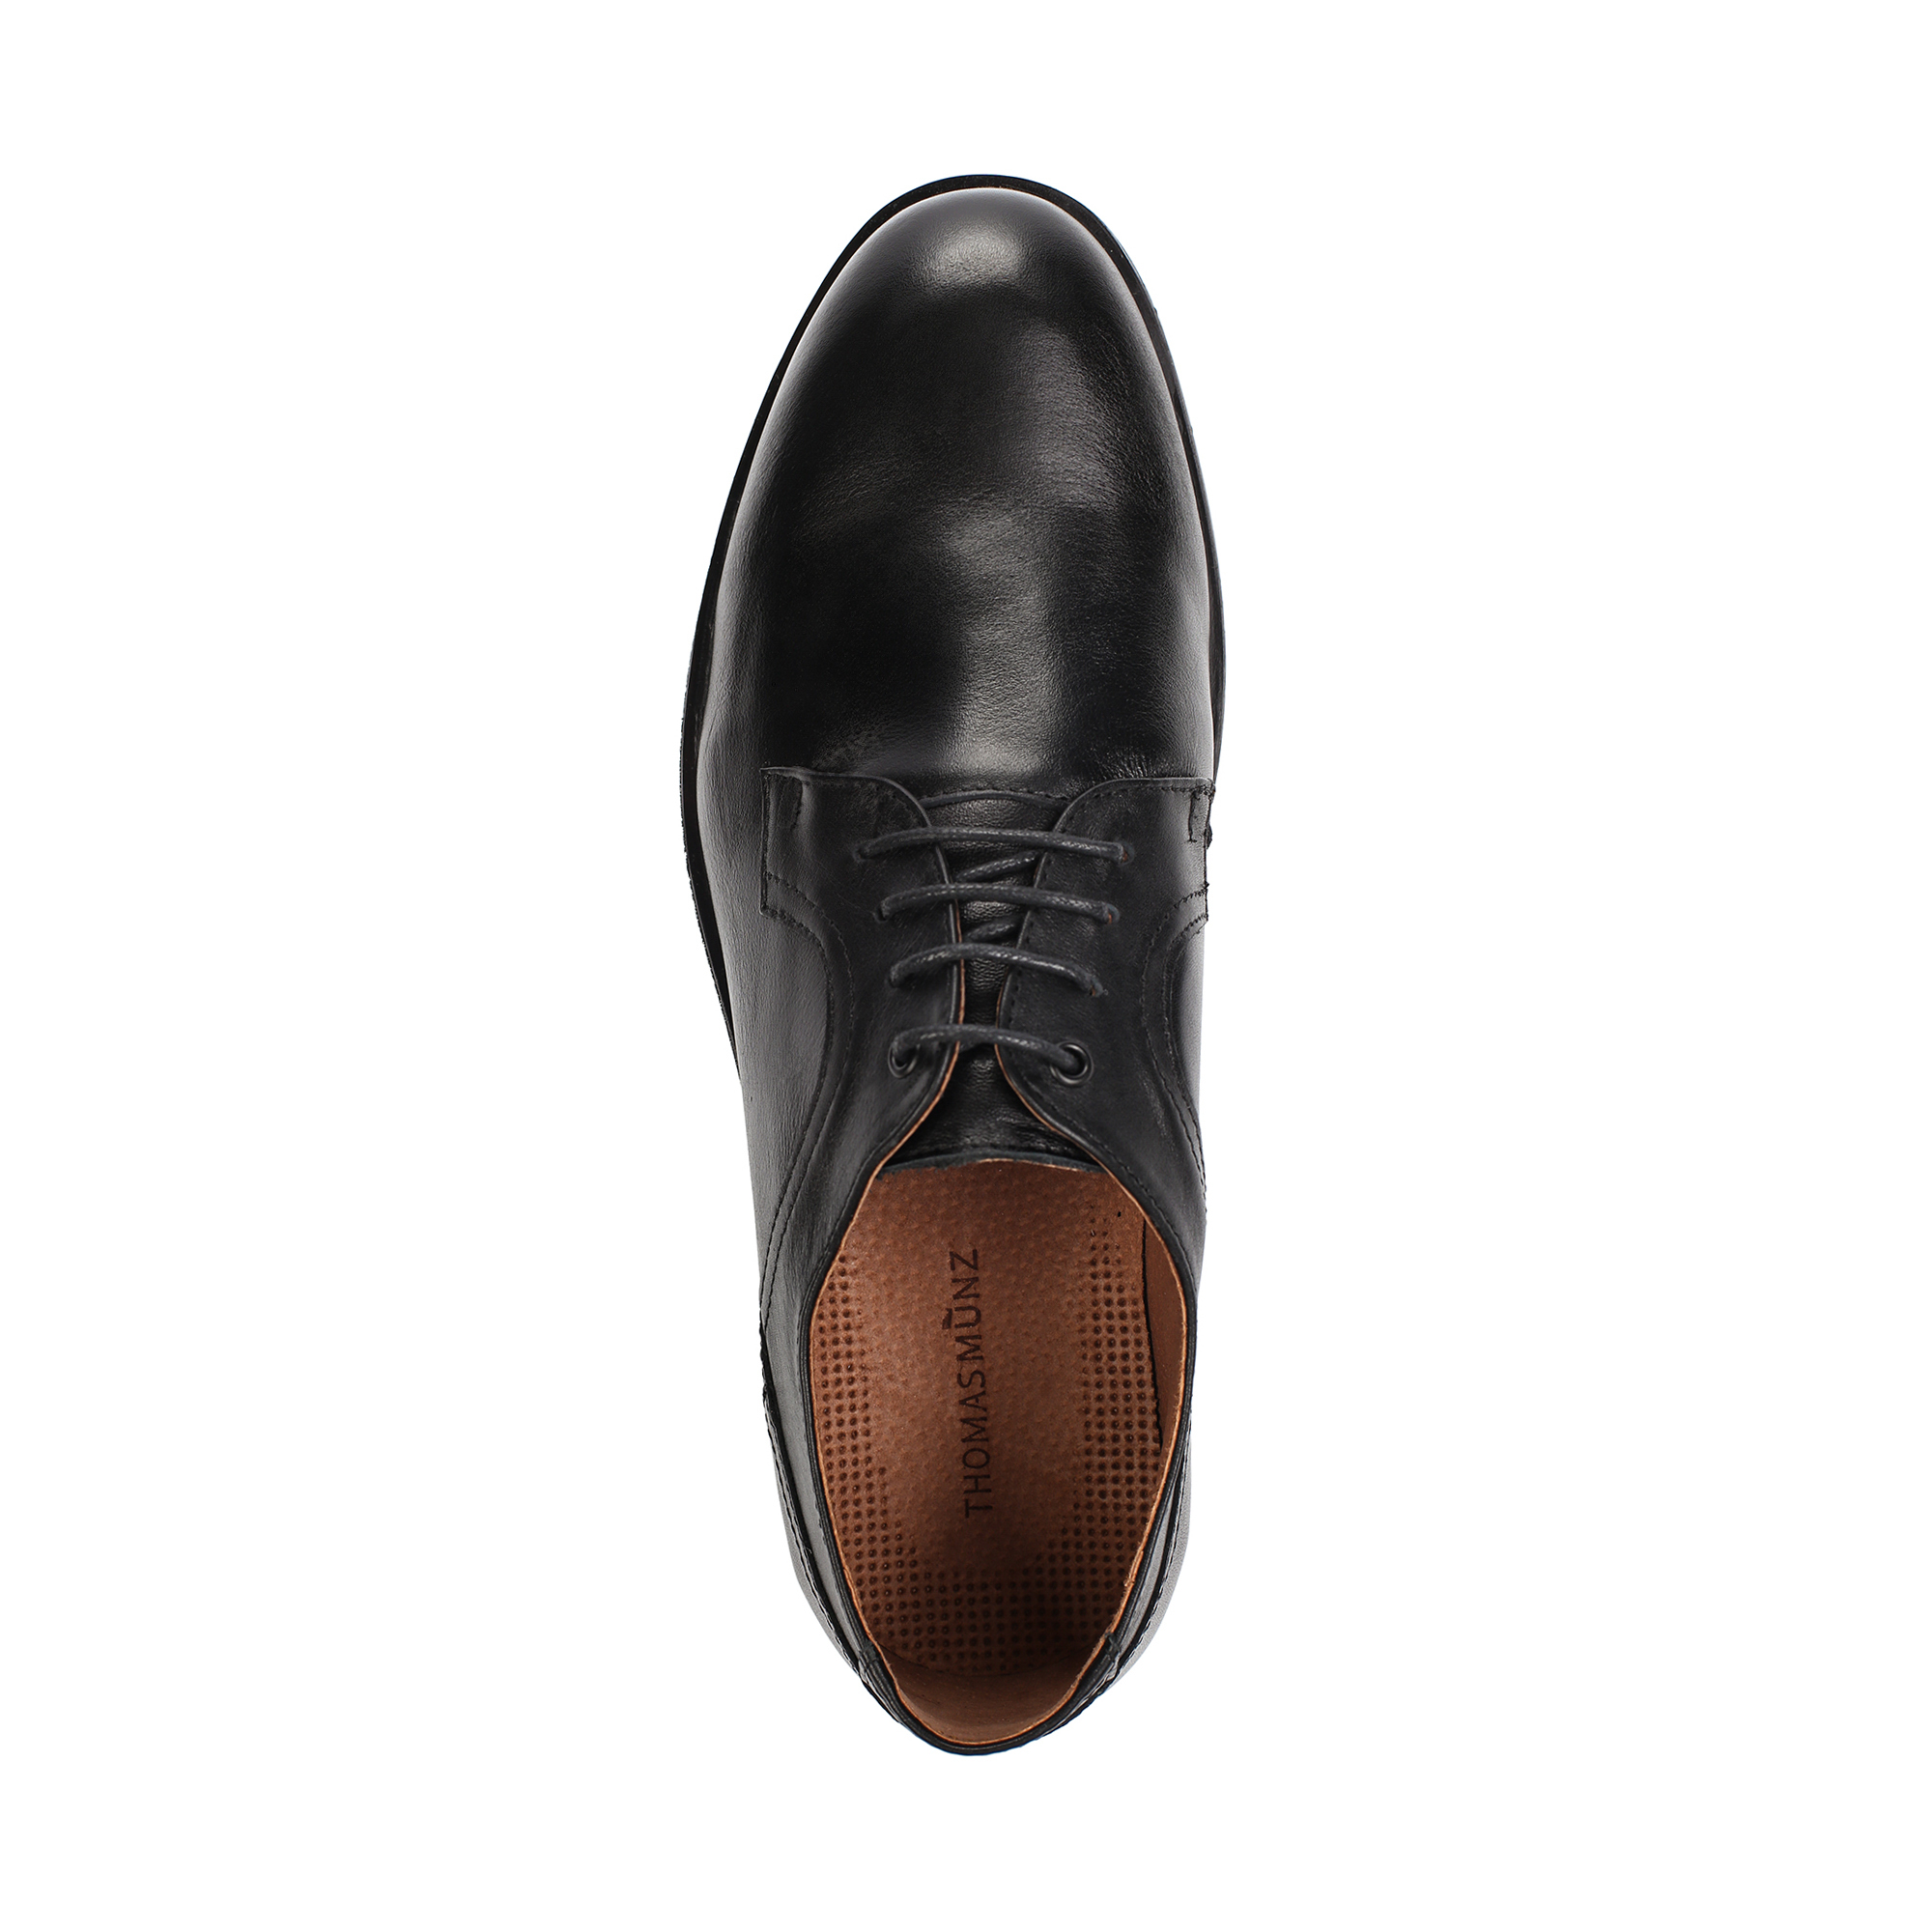 Туфли/полуботинки Thomas Munz 302-050B-1102, цвет черный, размер 43 - фото 5